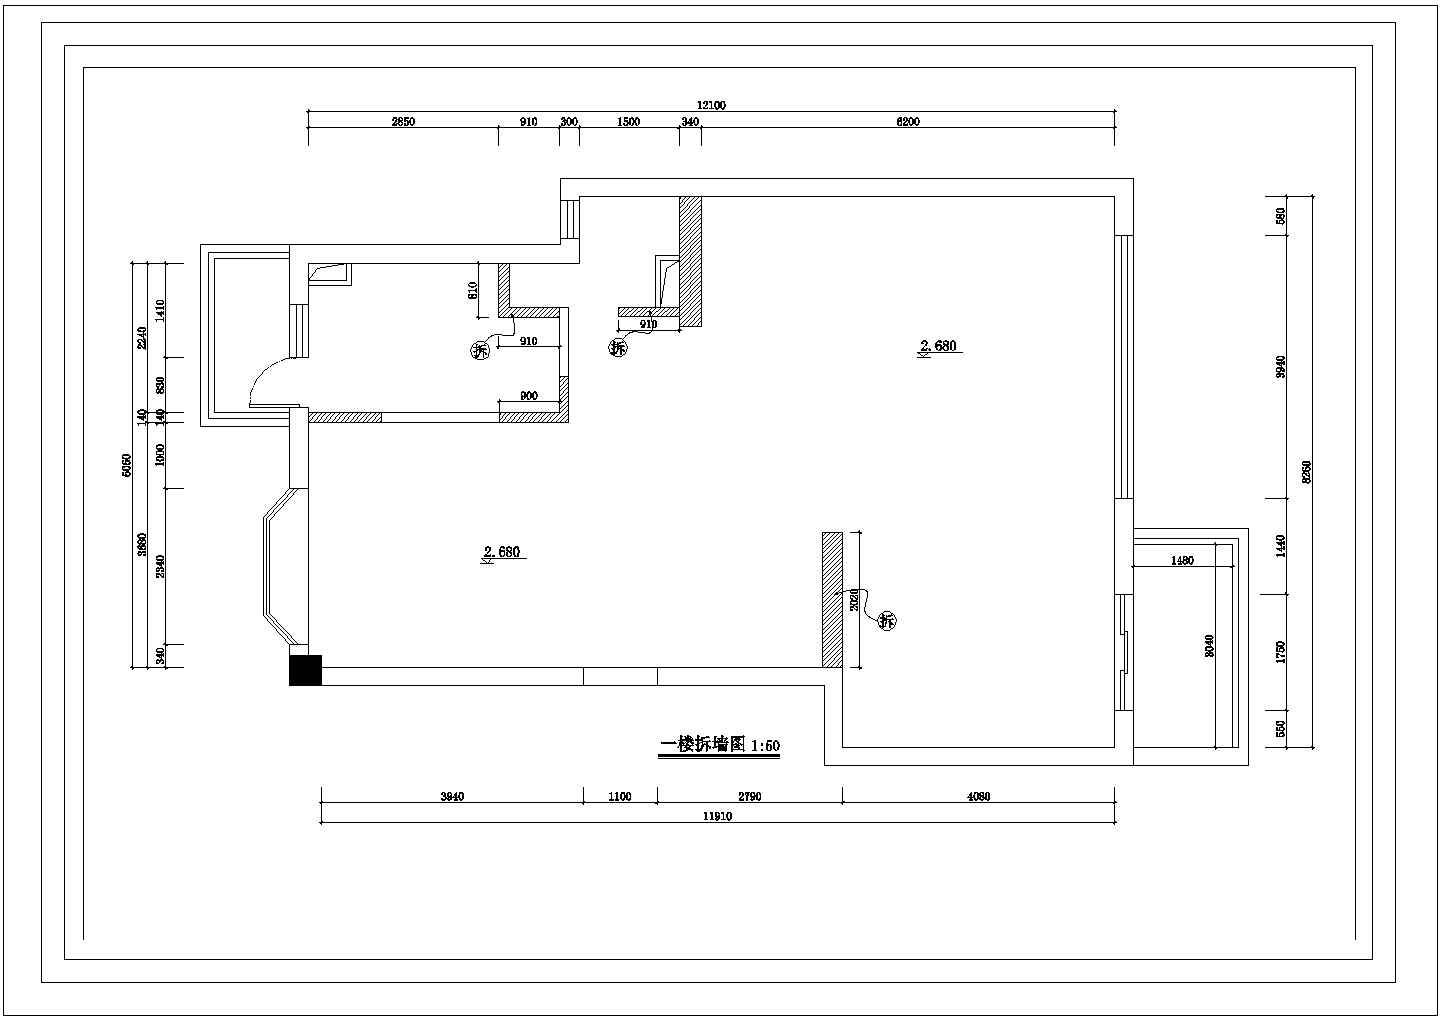 银川市祥和佳苑小区3层砖混结构独栋别墅全套装修装饰设计CAD图纸